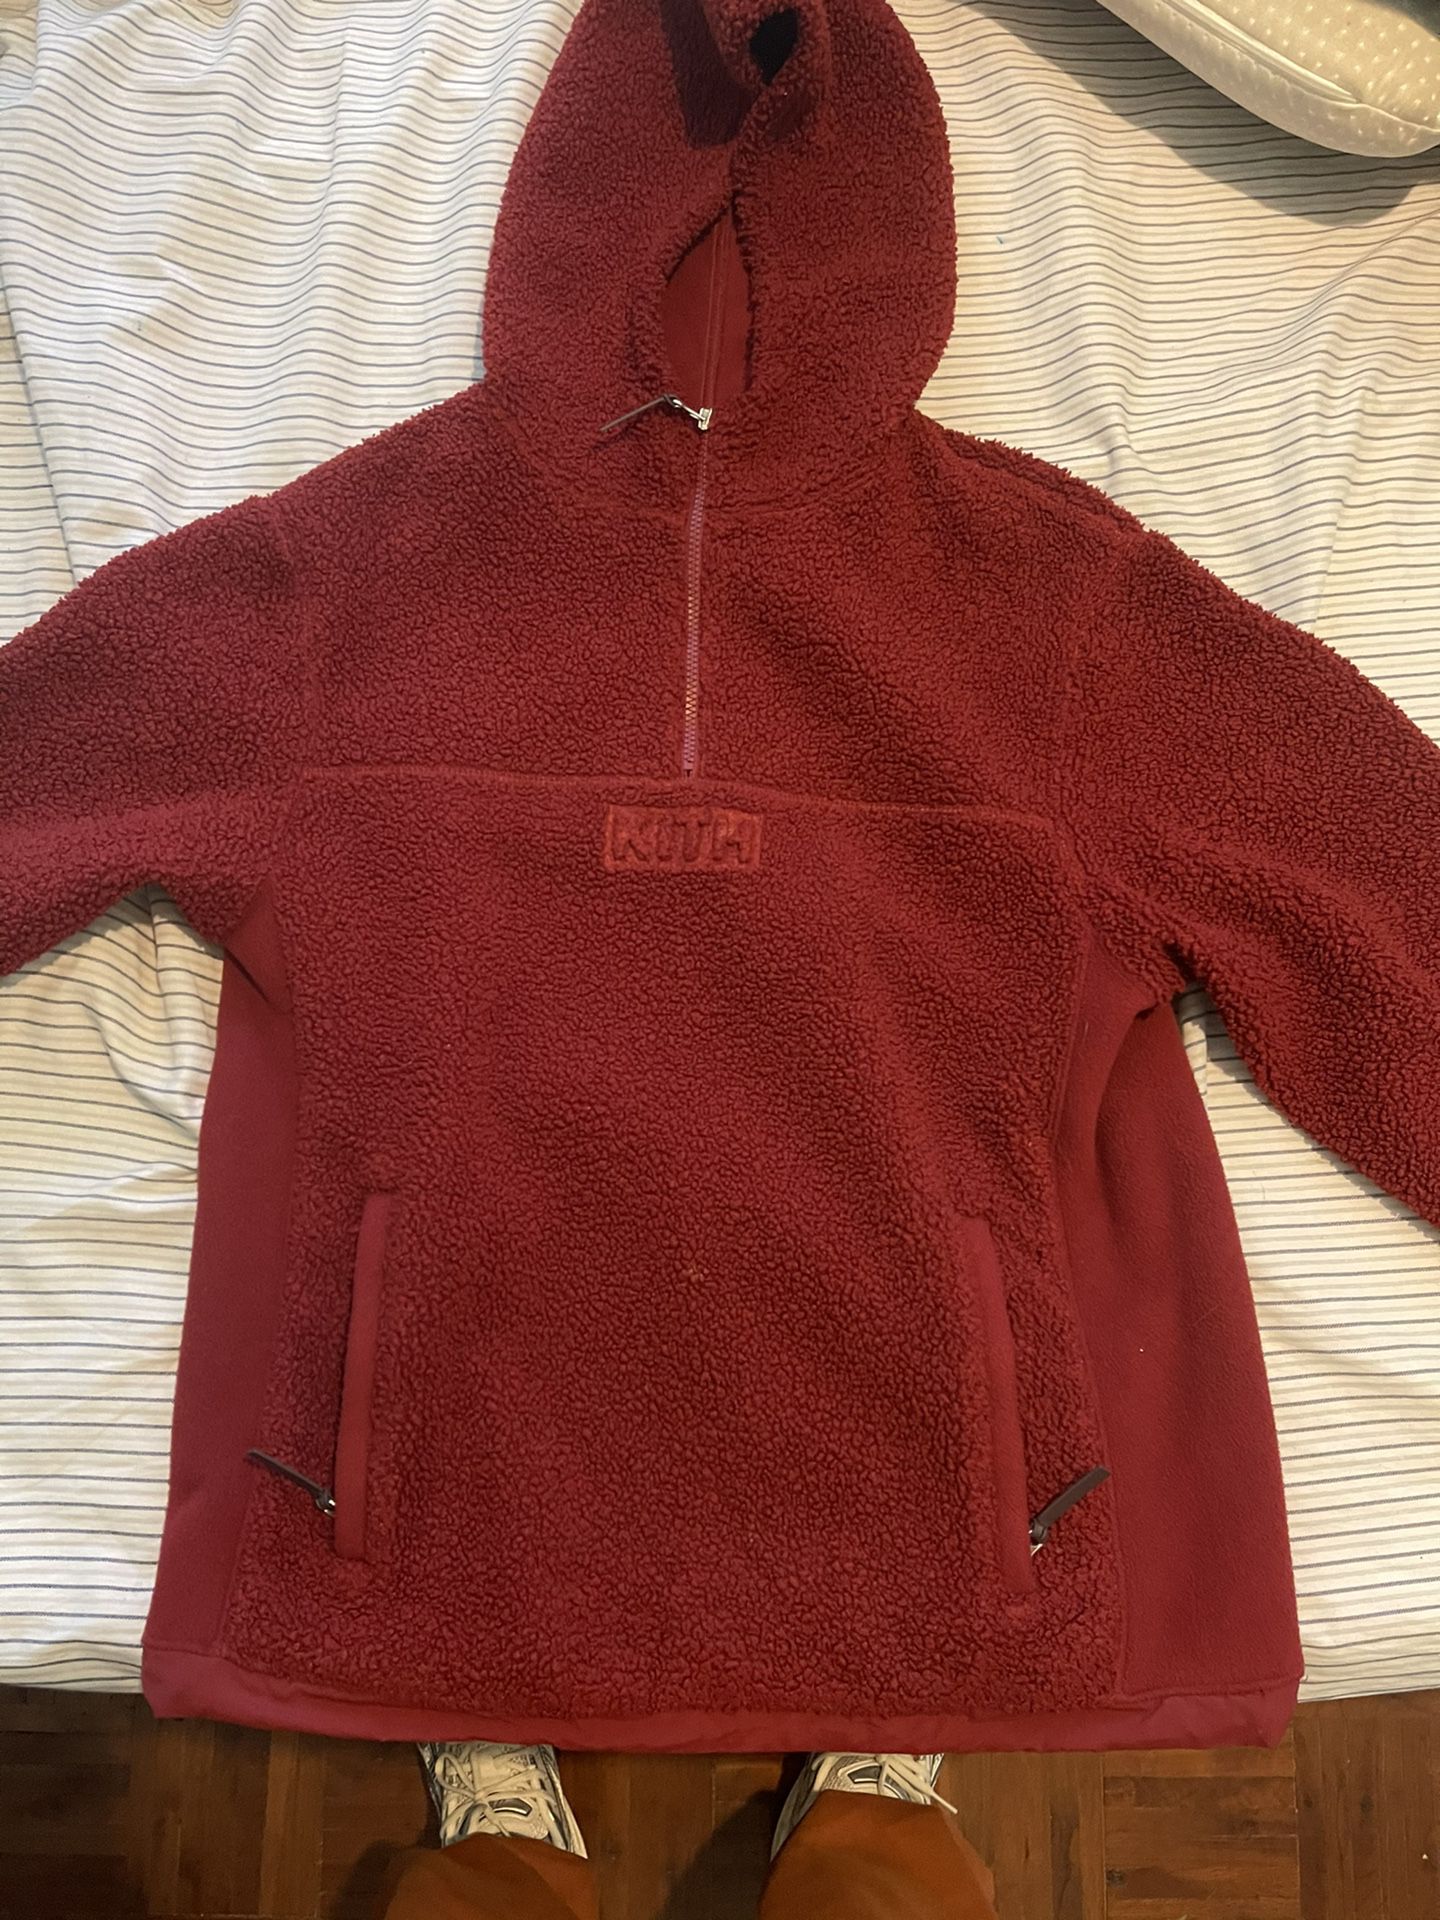 Kith Sweatshirt (Sherpa) Size Small